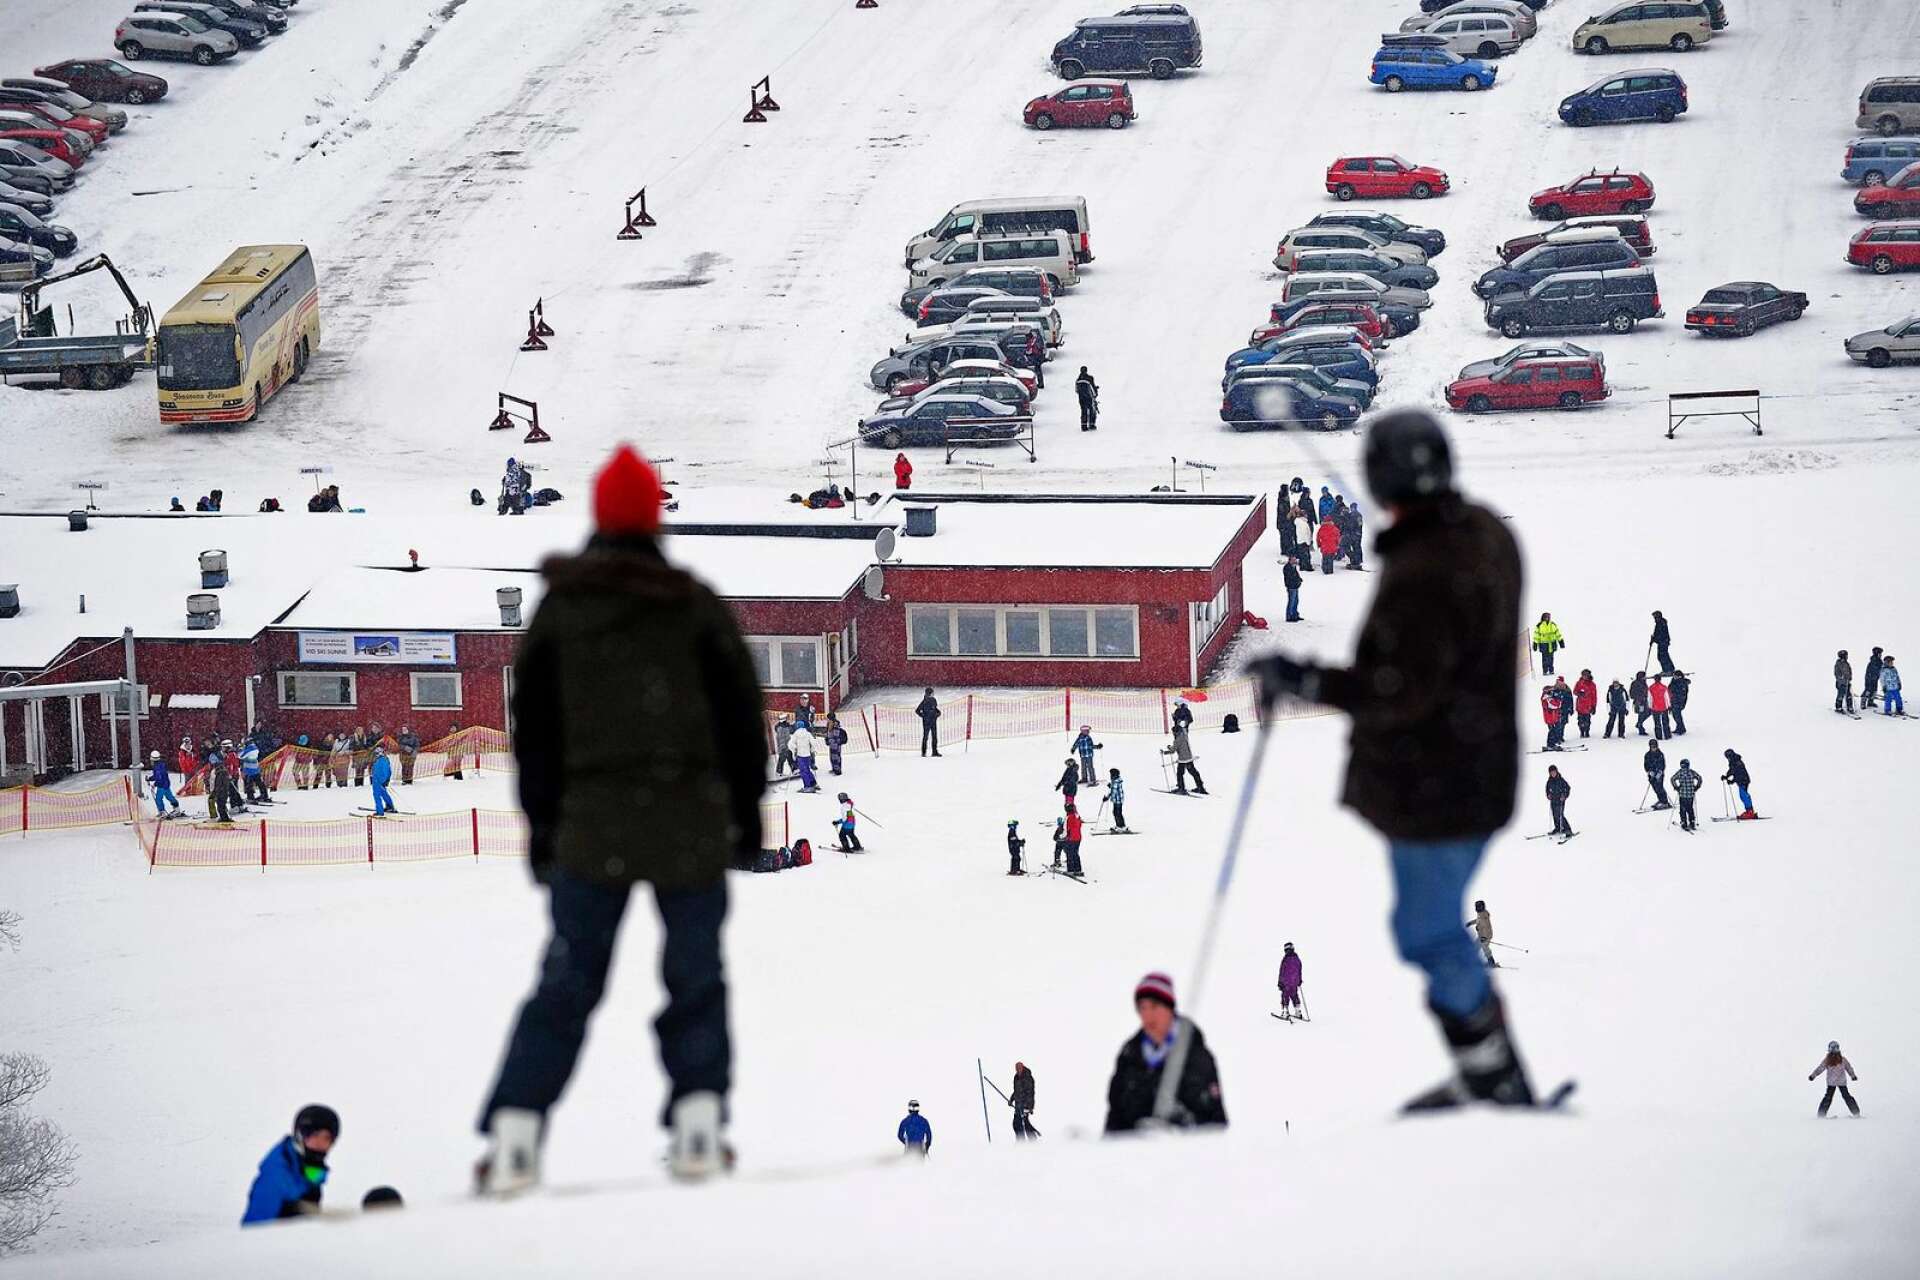 Så här brukar det se ut en normal säsong vid Ski Sunne. I år har det varit betydligt sämre snötillgång.